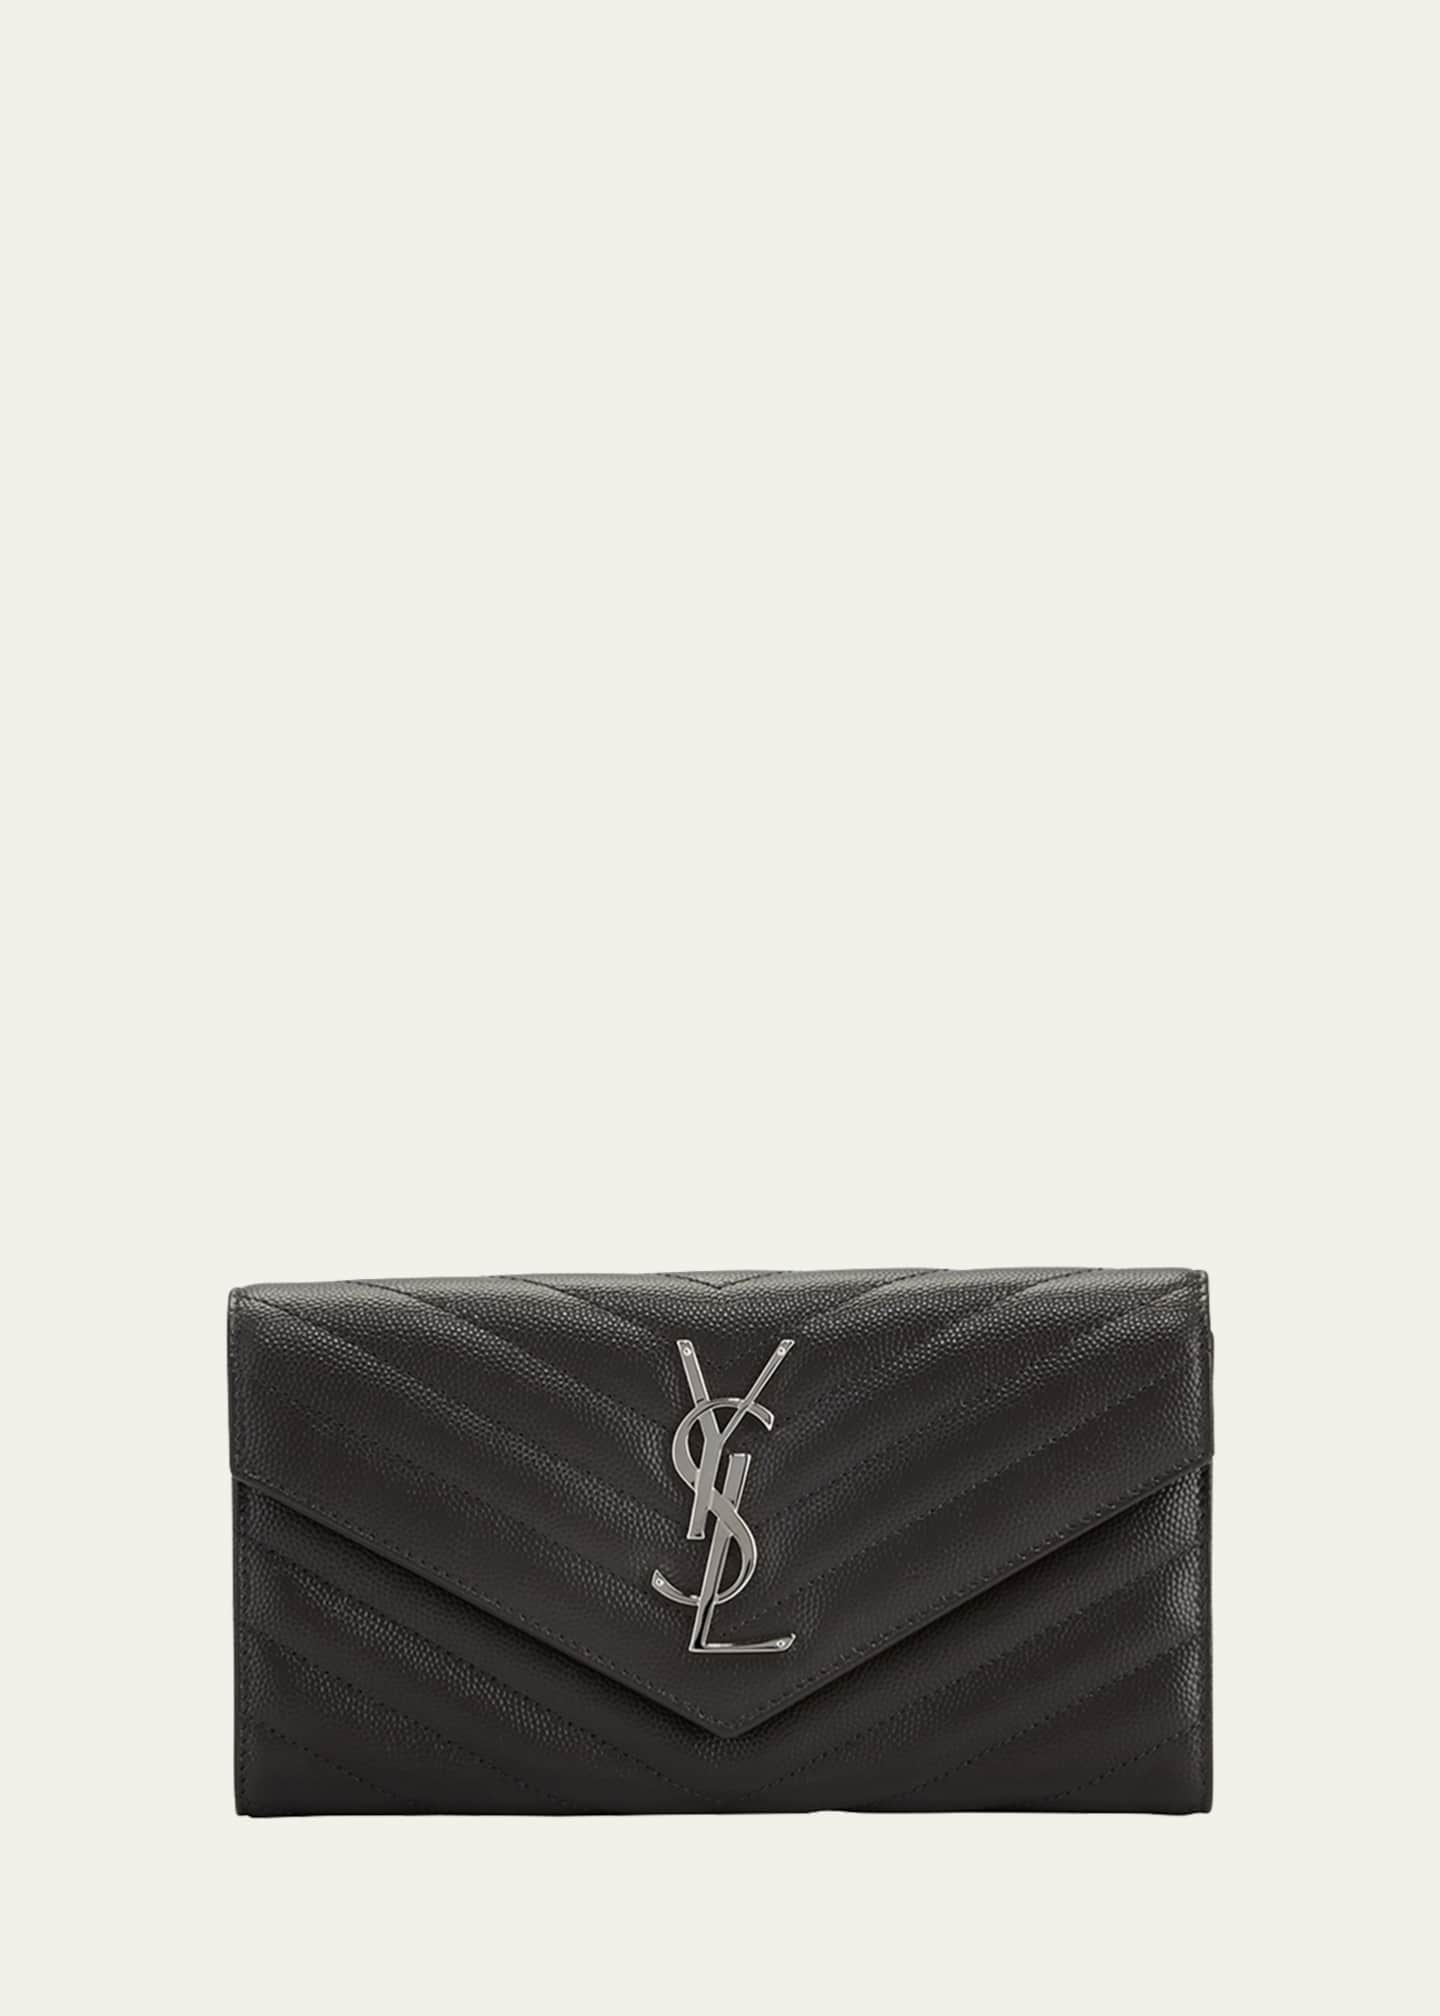 Saint Laurent Men's YSL Leather Billfold Wallet - Bergdorf Goodman